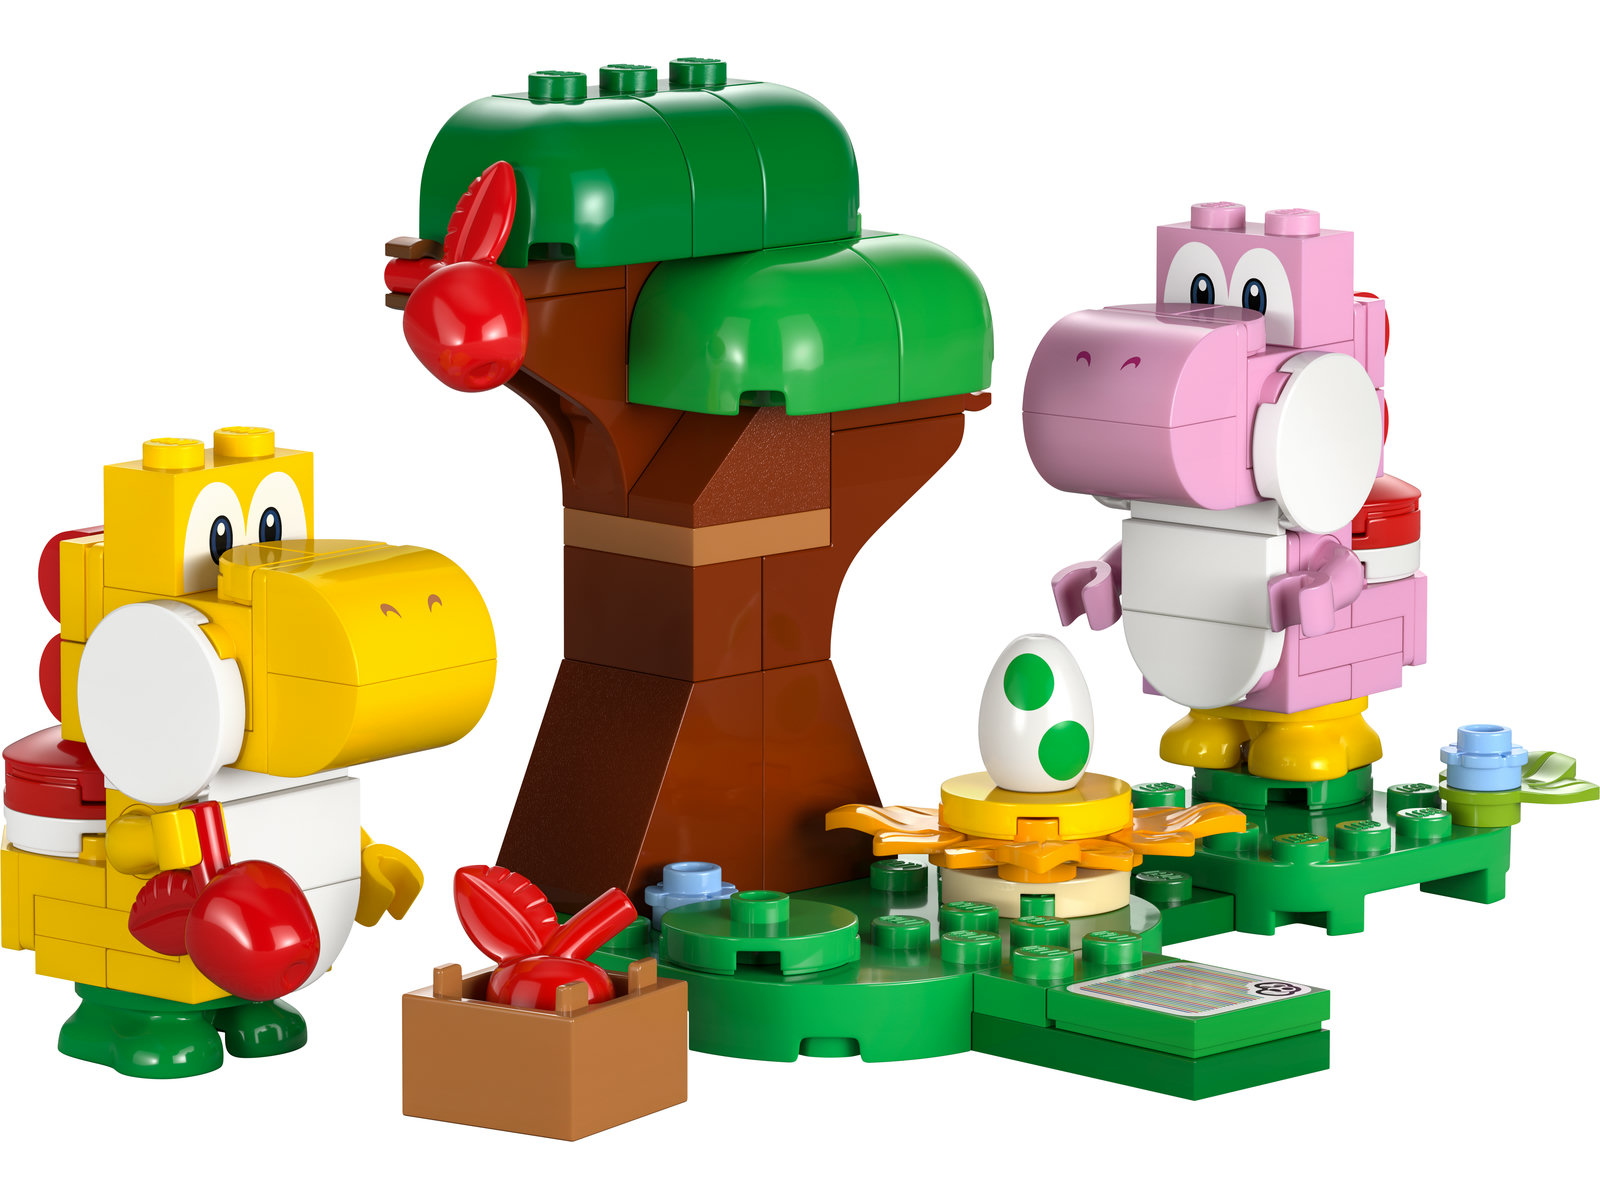 LEGO® Super Mario 71428 - Yoshis wilder Wald – Erweiterungsset